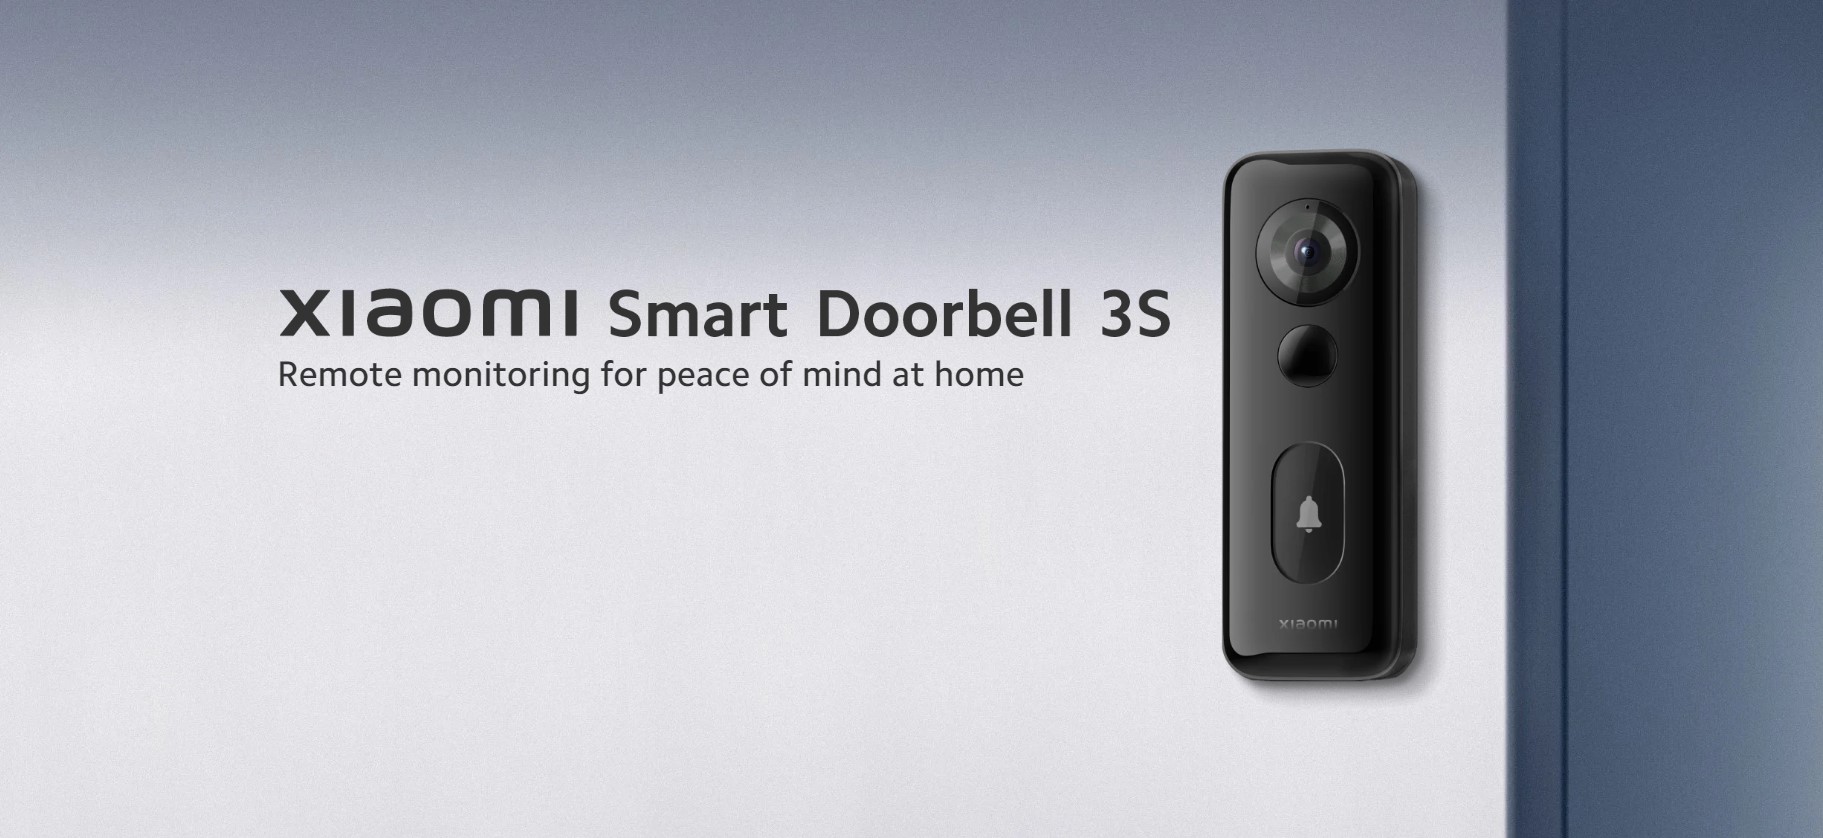 Inteligentny dzwonek Smart Doorbell 3S (źródło: Xiaomi)